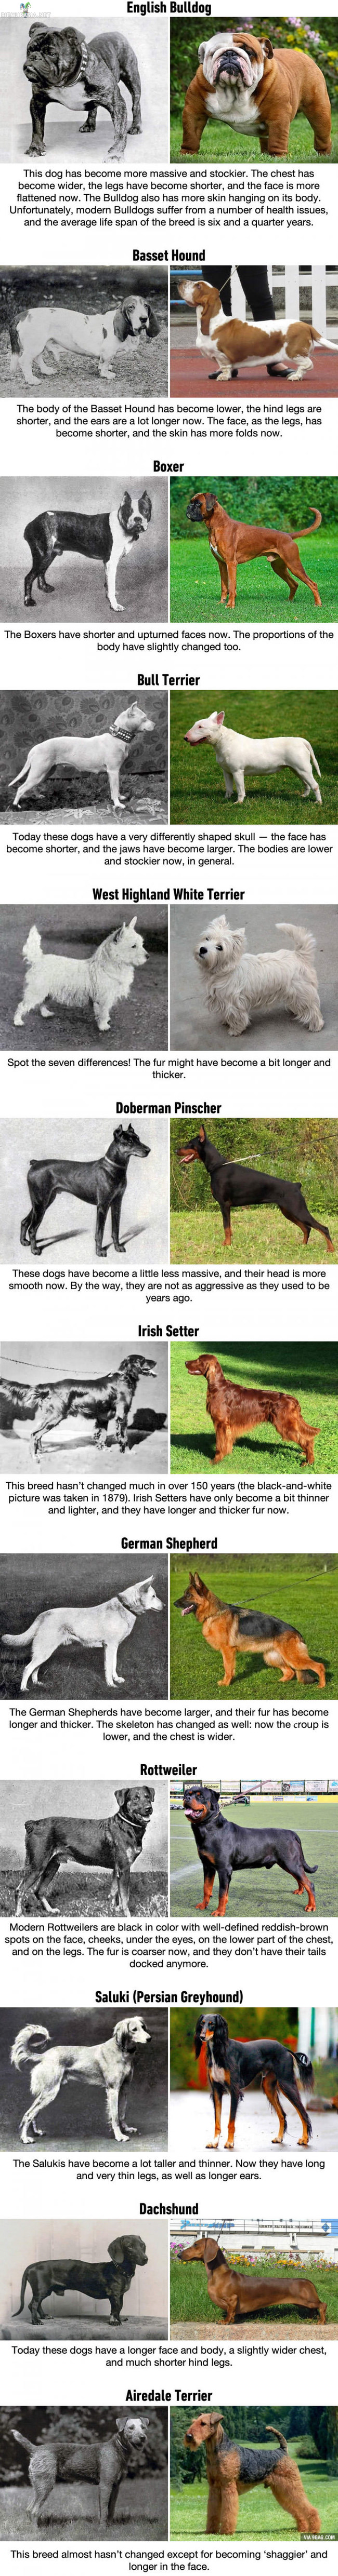 Koirien jalostus - Kuinka eri koirarotujen ulkomuoto on muuttunut viimeisen sadan vuoden jalostuksen aikana